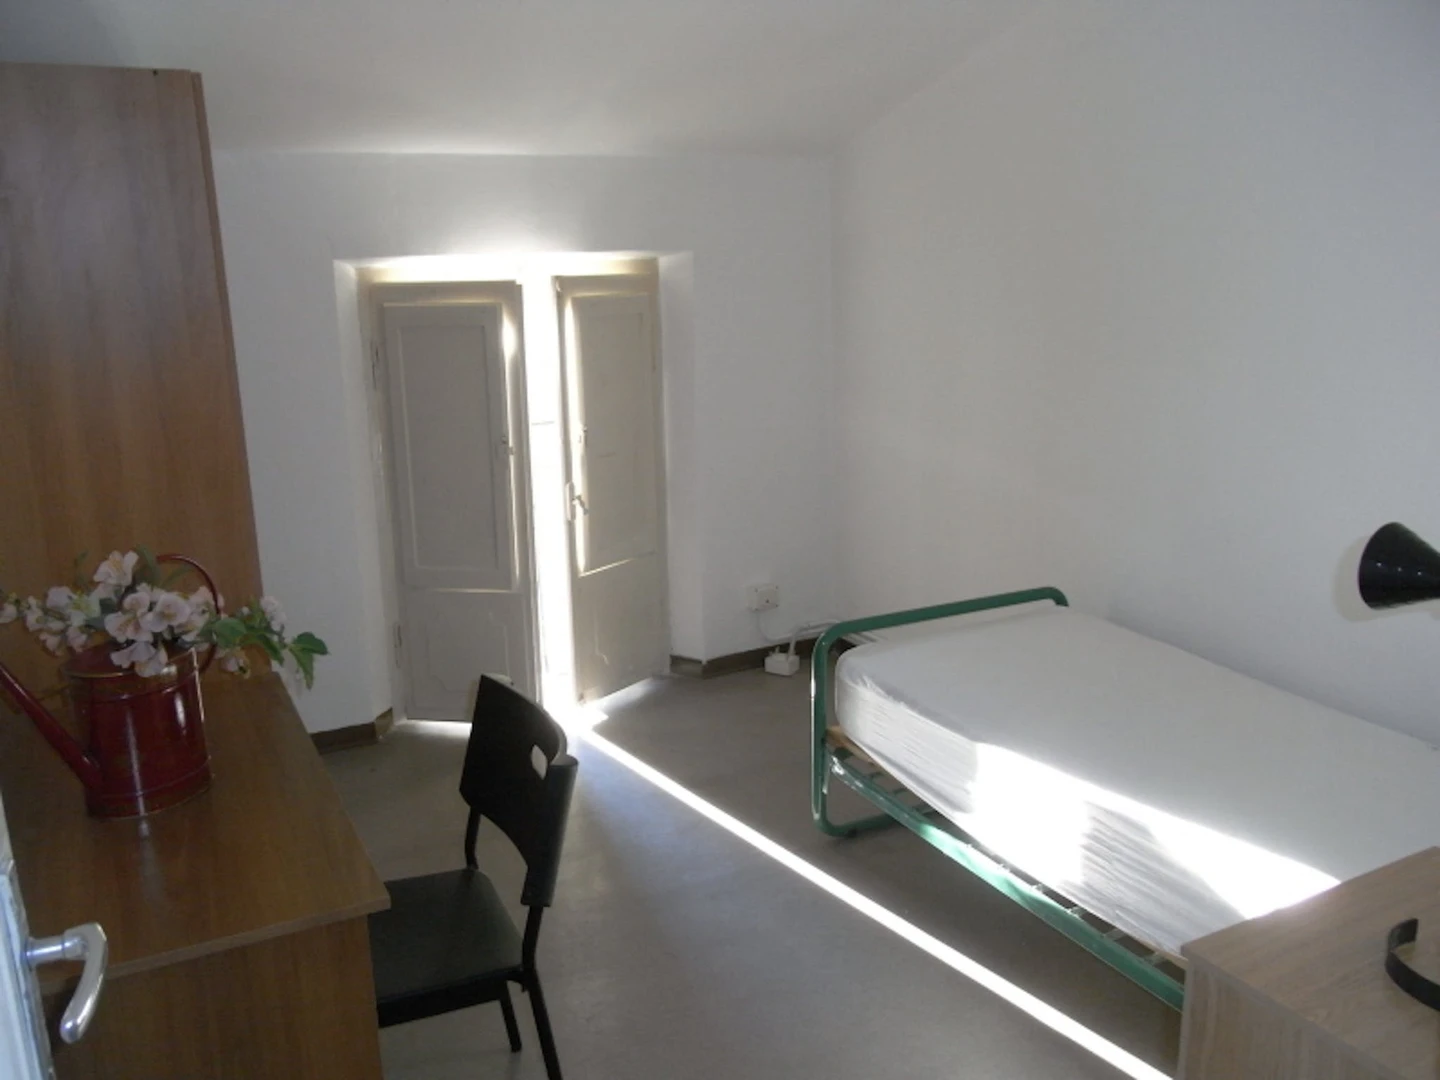 Habitación privada barata en Parma